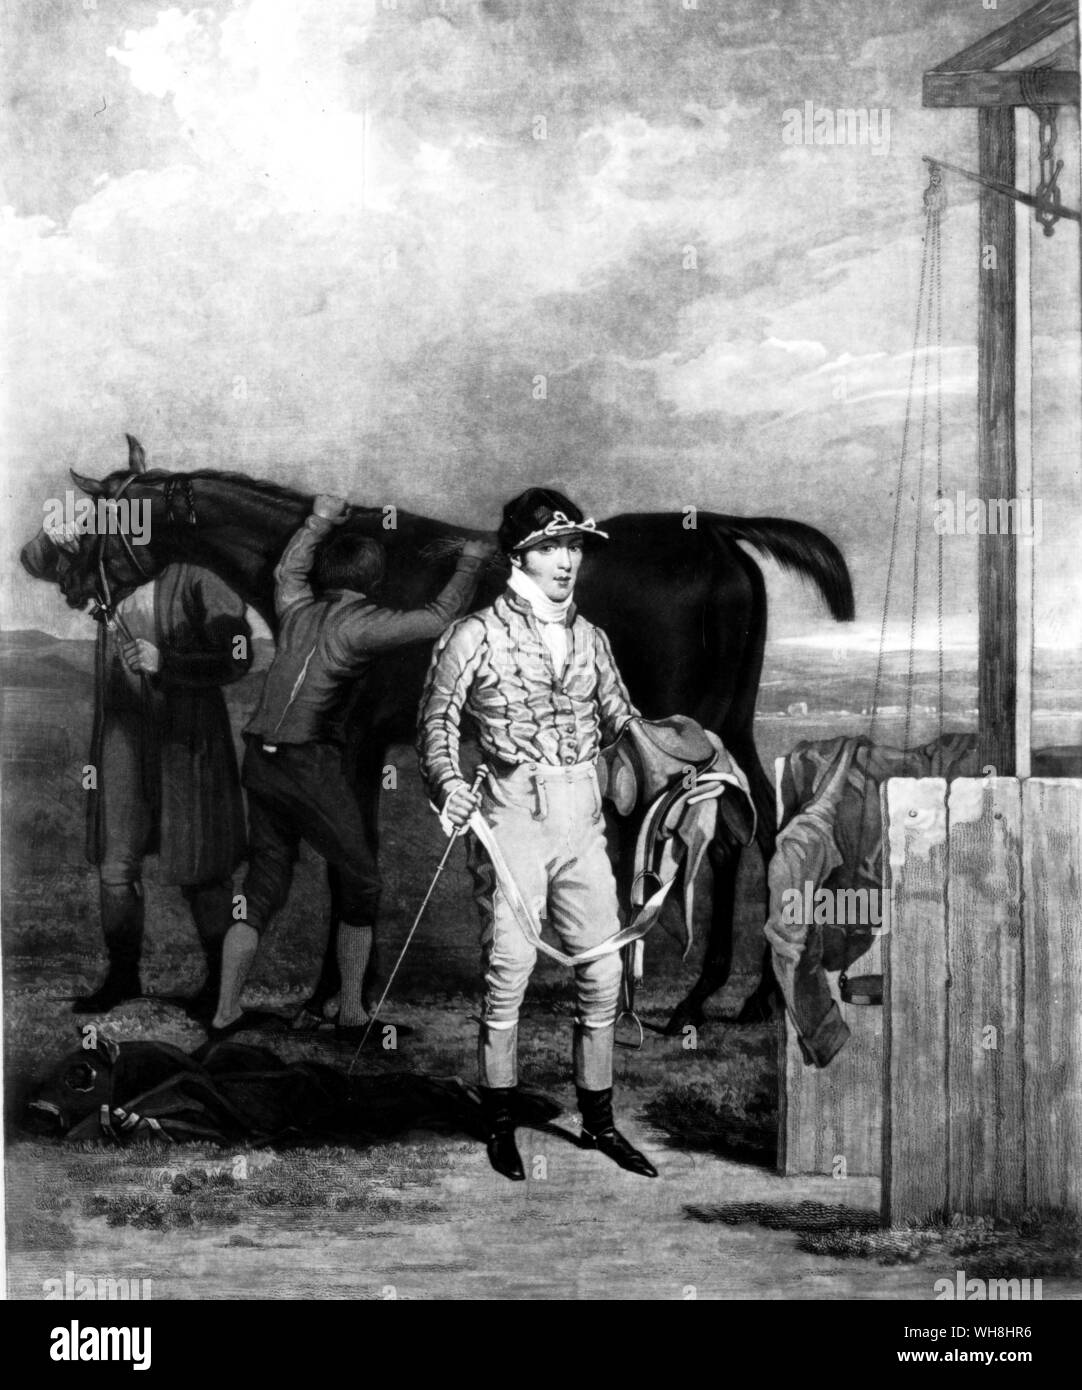 Sam Chifney Junior. Der ylvanus", sagte: "Wie für Sam, er war durch und durch das Beau Ideal eines Jockey wenn in seiner höchsten Vollkommenheit und Eleganz von Seat, Vollkommenheit in der Hand, Urteil vom Tempo, und macht in seinen Sattel, war kein Mann, der jemals in einem übertroffen." Chifney (1786-1855) ist hier auf 21 gezeigt, die Rückkehr zu skalieren. Fünf Jahre später wurde er Manuella blatently gestoppt der Favorit im Derby von 1812. Er gewann die Derbys von 1818 und 1820 für die quire' Thornhill, wer hat genug Geld, die bestechungsgelder der Beine zu überwiegen. Er wurde so faul, dass seine letzten Jahre in einer Art Erstarrung aufgewendet wurden. Die Geschichte der Stockfoto